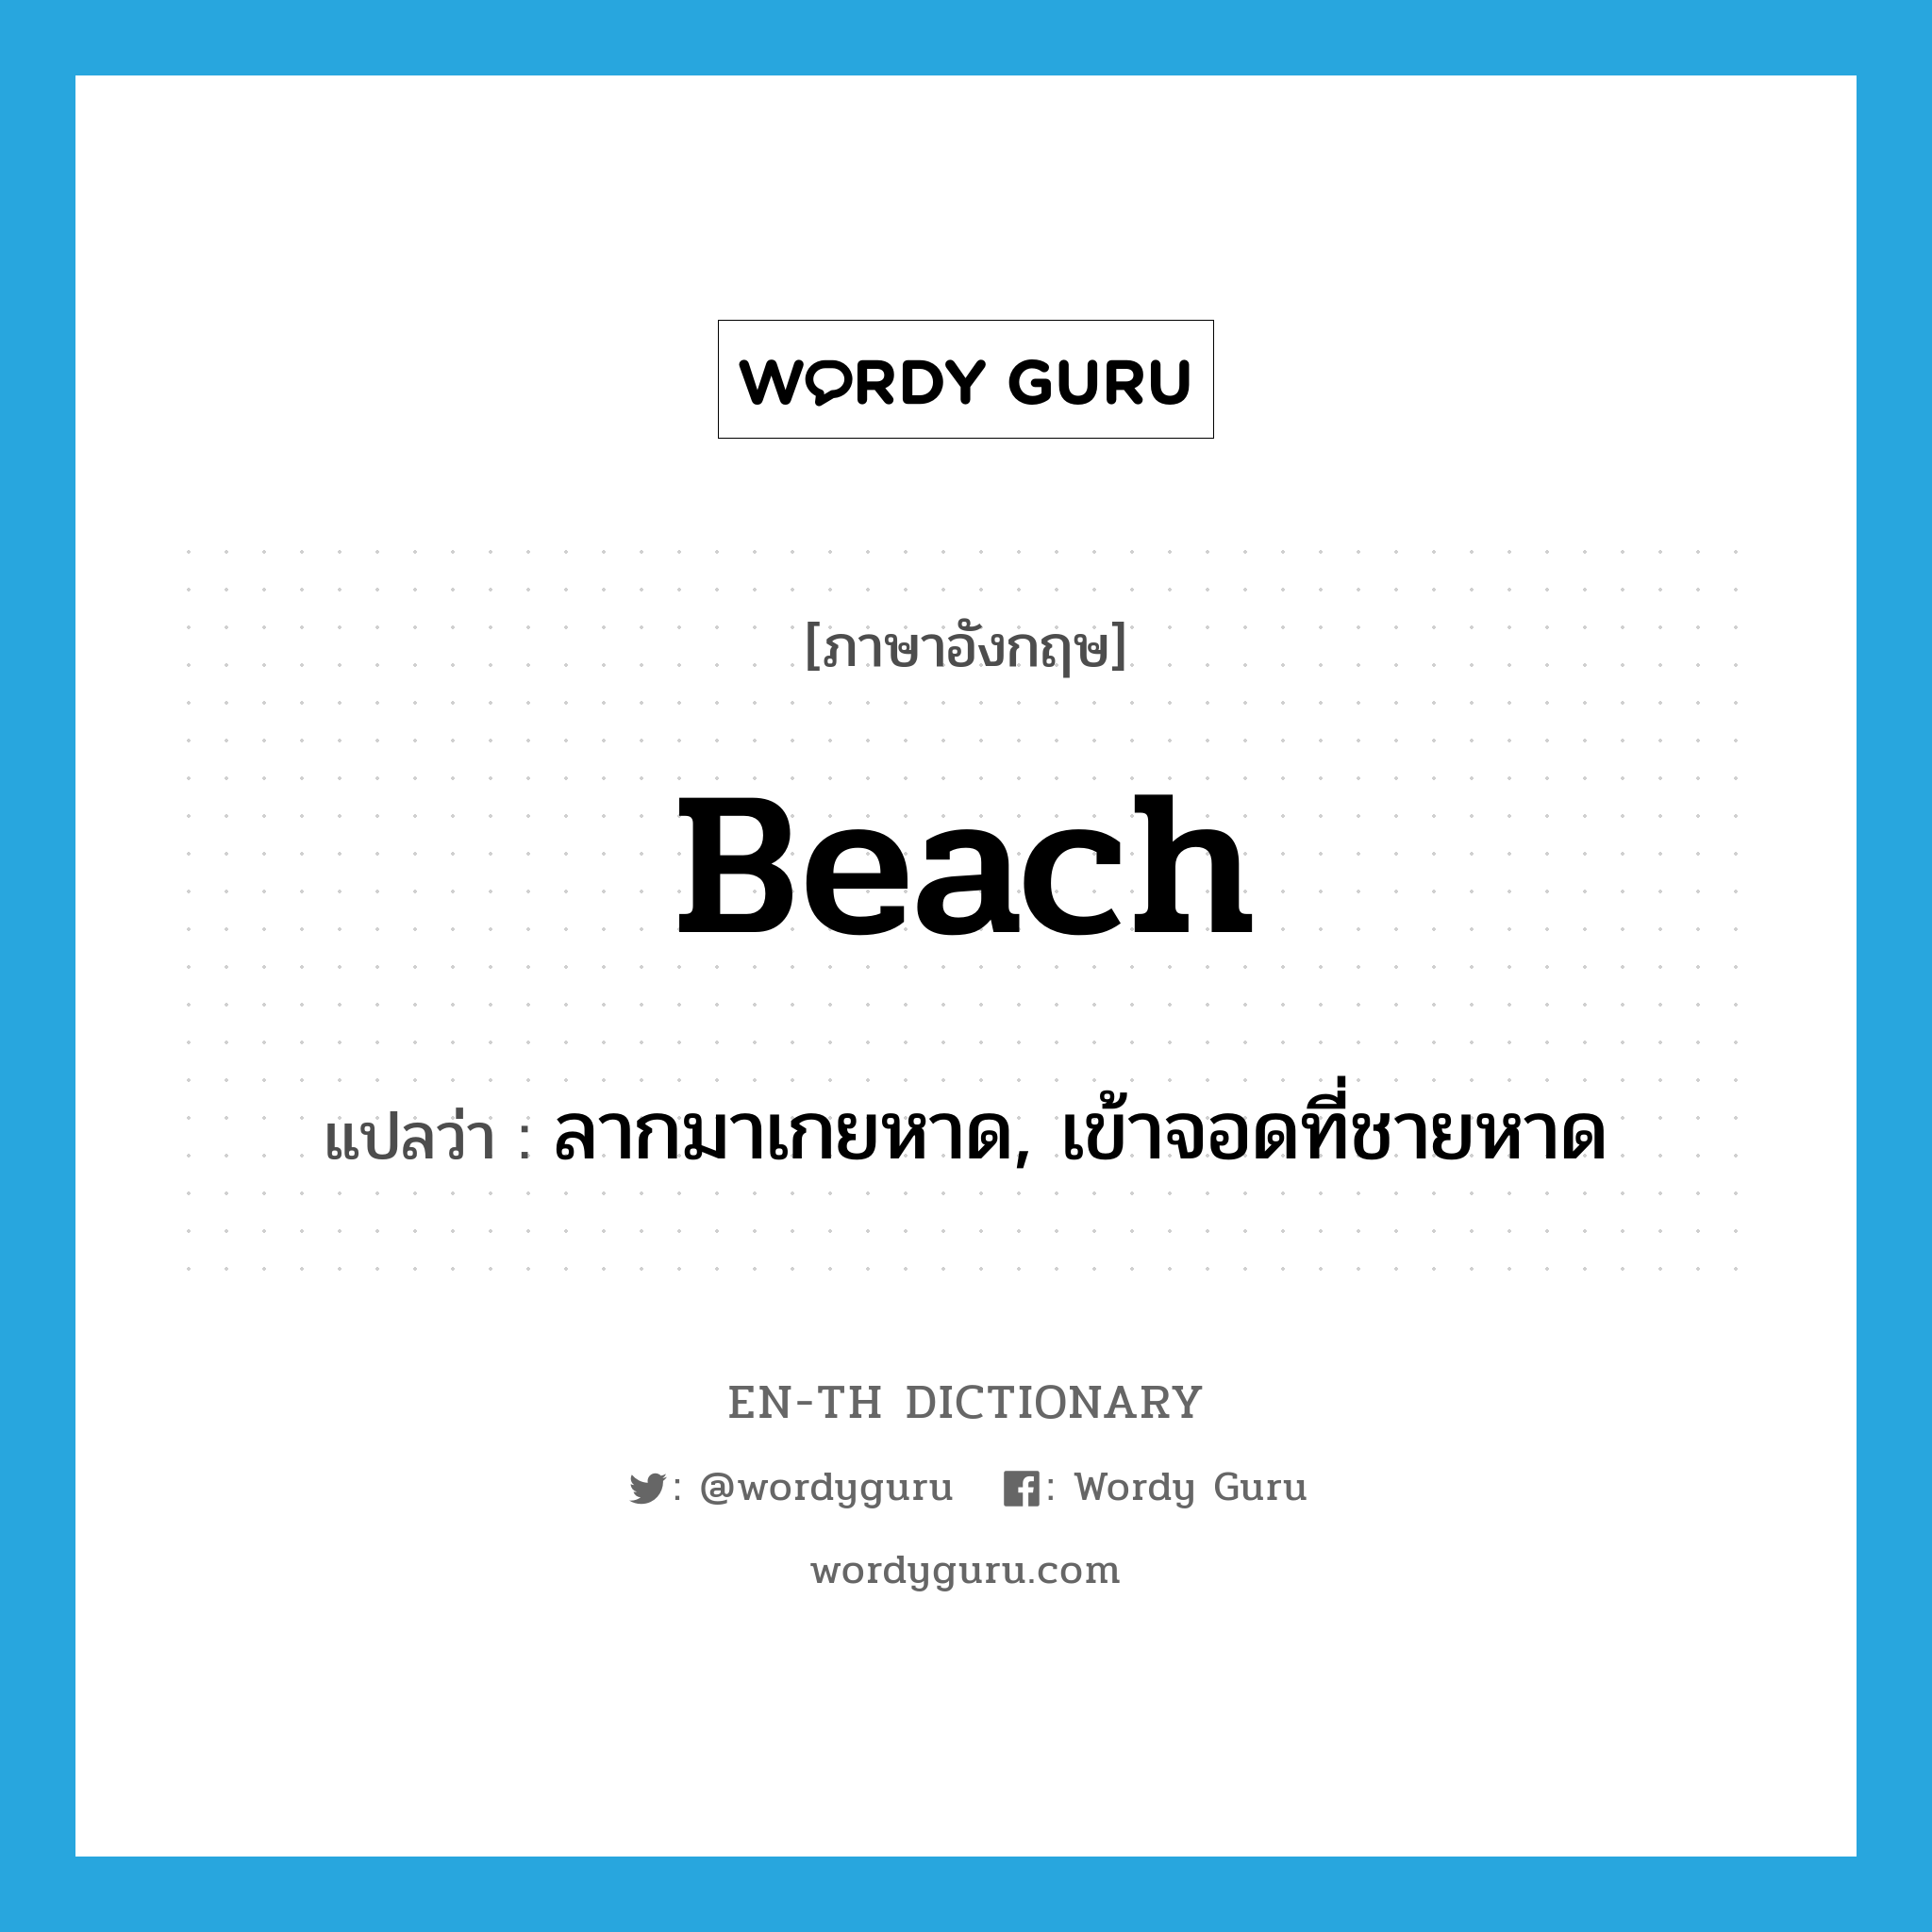 ลากมาเกยหาด, เข้าจอดที่ชายหาด ภาษาอังกฤษ?, คำศัพท์ภาษาอังกฤษ ลากมาเกยหาด, เข้าจอดที่ชายหาด แปลว่า beach ประเภท VT หมวด VT